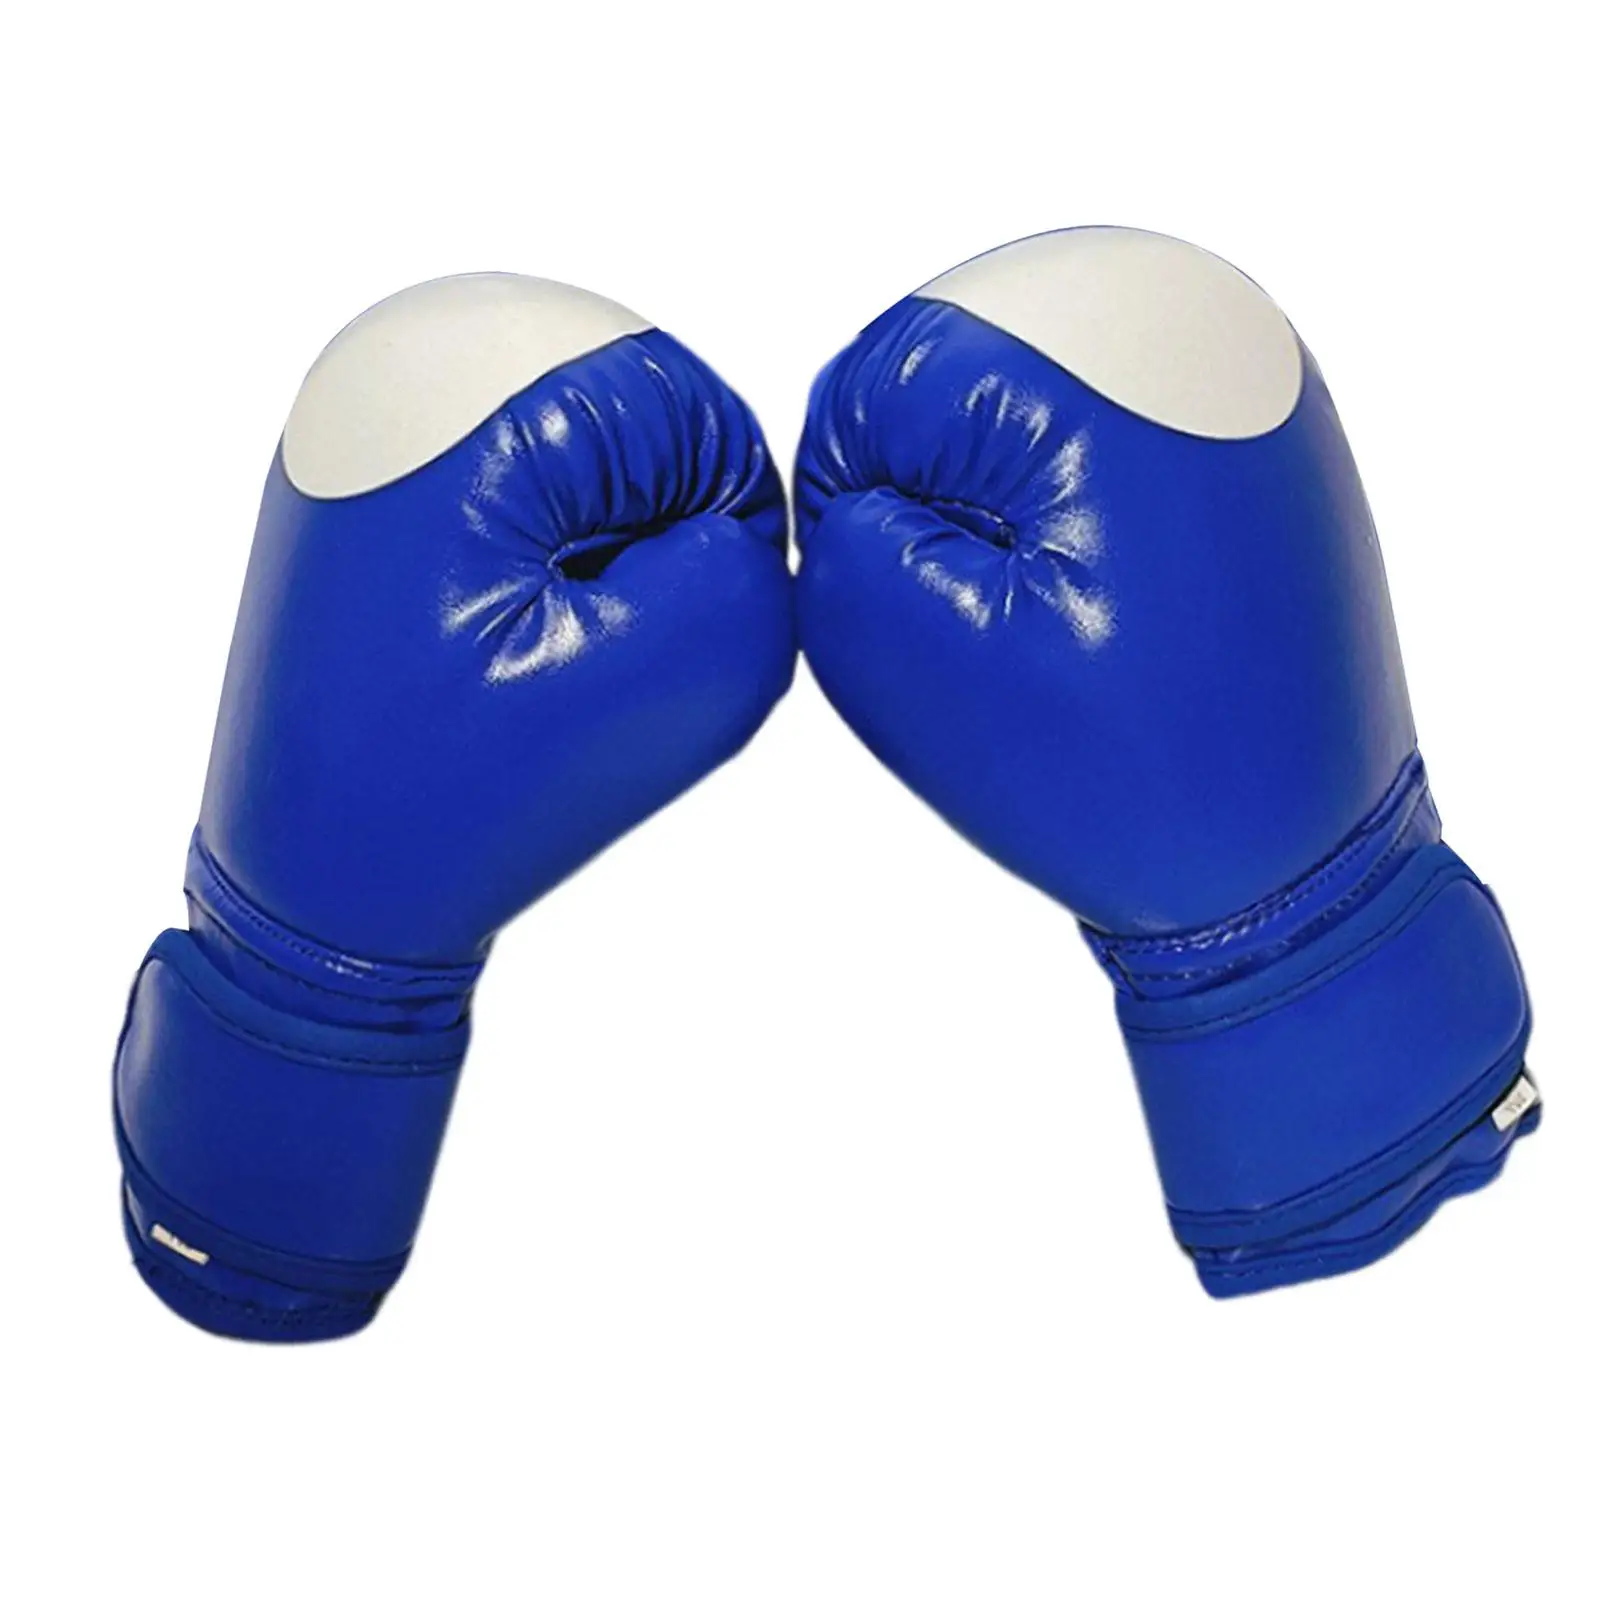 Детские боксерские перчатки для тренировок, спарринговые перчатки Bulit с толстой поролоновой подкладкой, длинный ремешок на запястье, прочный для схваток и нанесения ударов